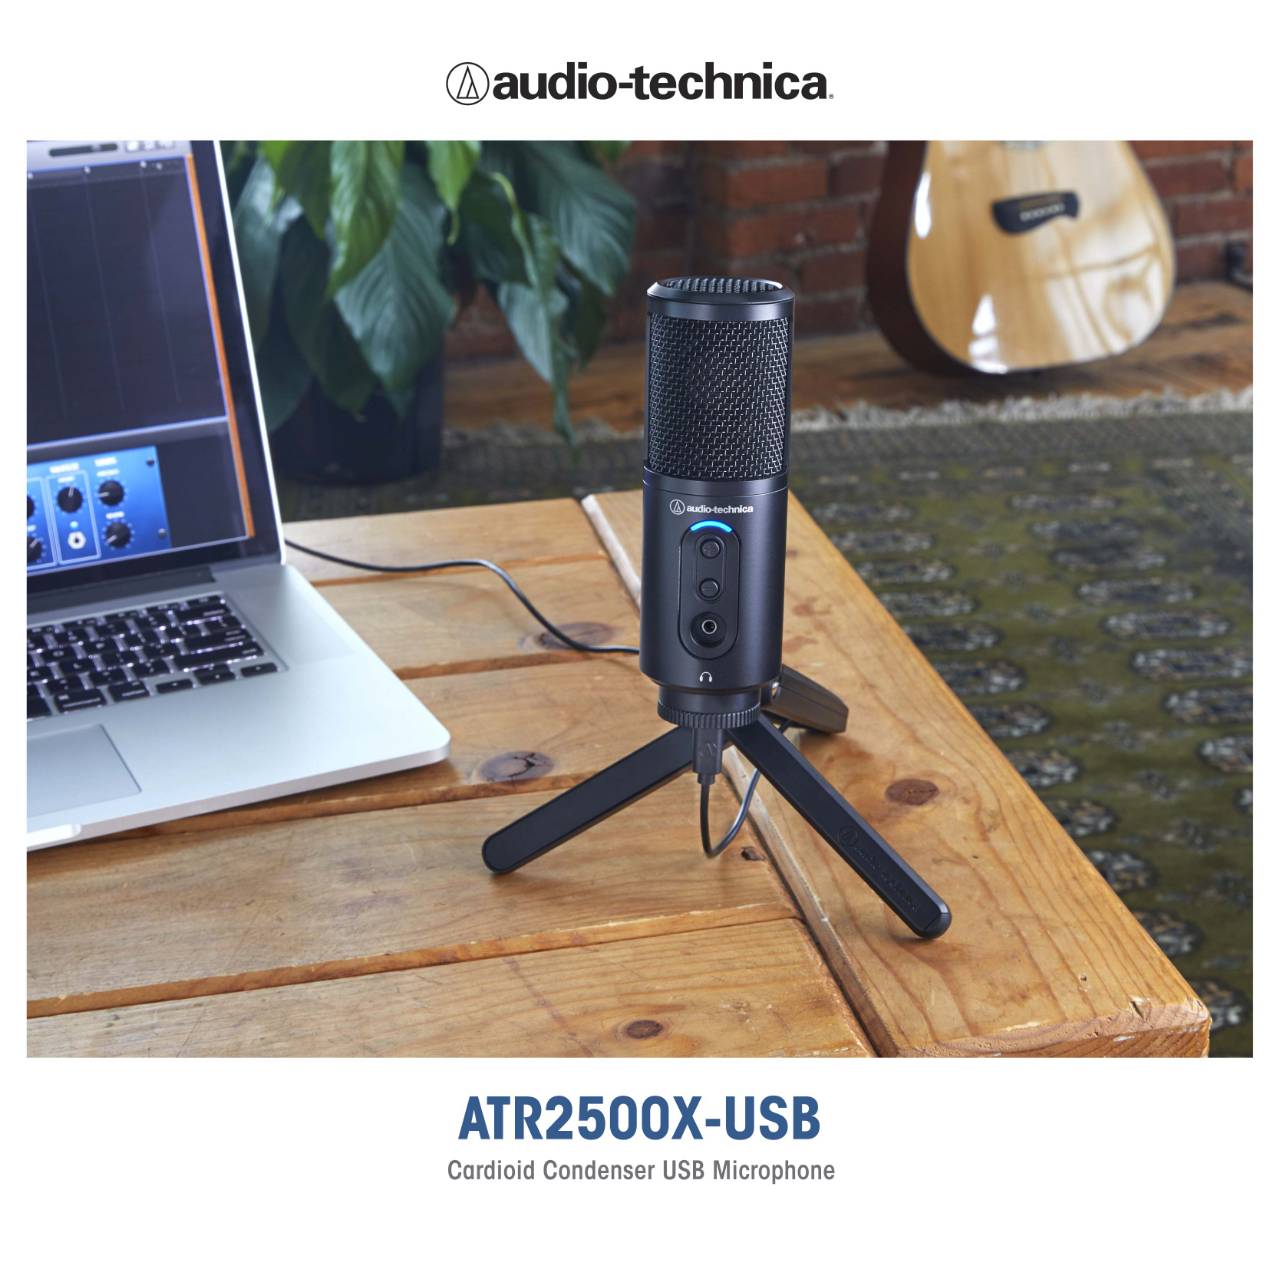 อาร์ทีบี เปิดตัว ไมโครโฟน 2 รุ่นใหม่ ภายใต้แบรนด์ “ออดิโอ-เทคนิก้า” ATR2500X-USB และ ATR2100X-USB ตอบโจทย์การใช้งานระดับมืออาชีพ